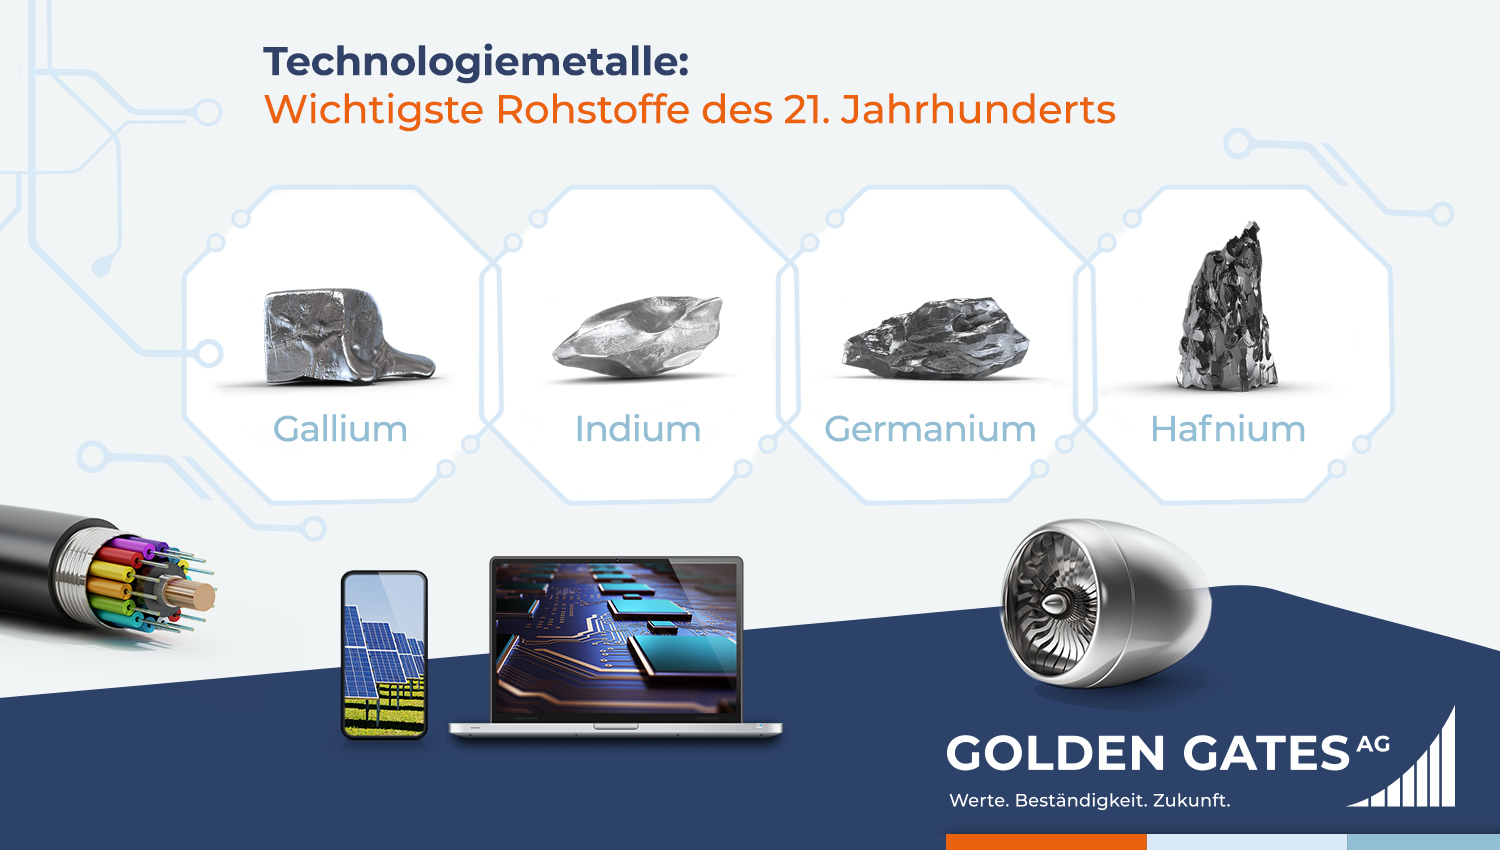 Golden Gates Technologiemetalle: Wichtigste Rohstoffe des 21. Jahrhunderts